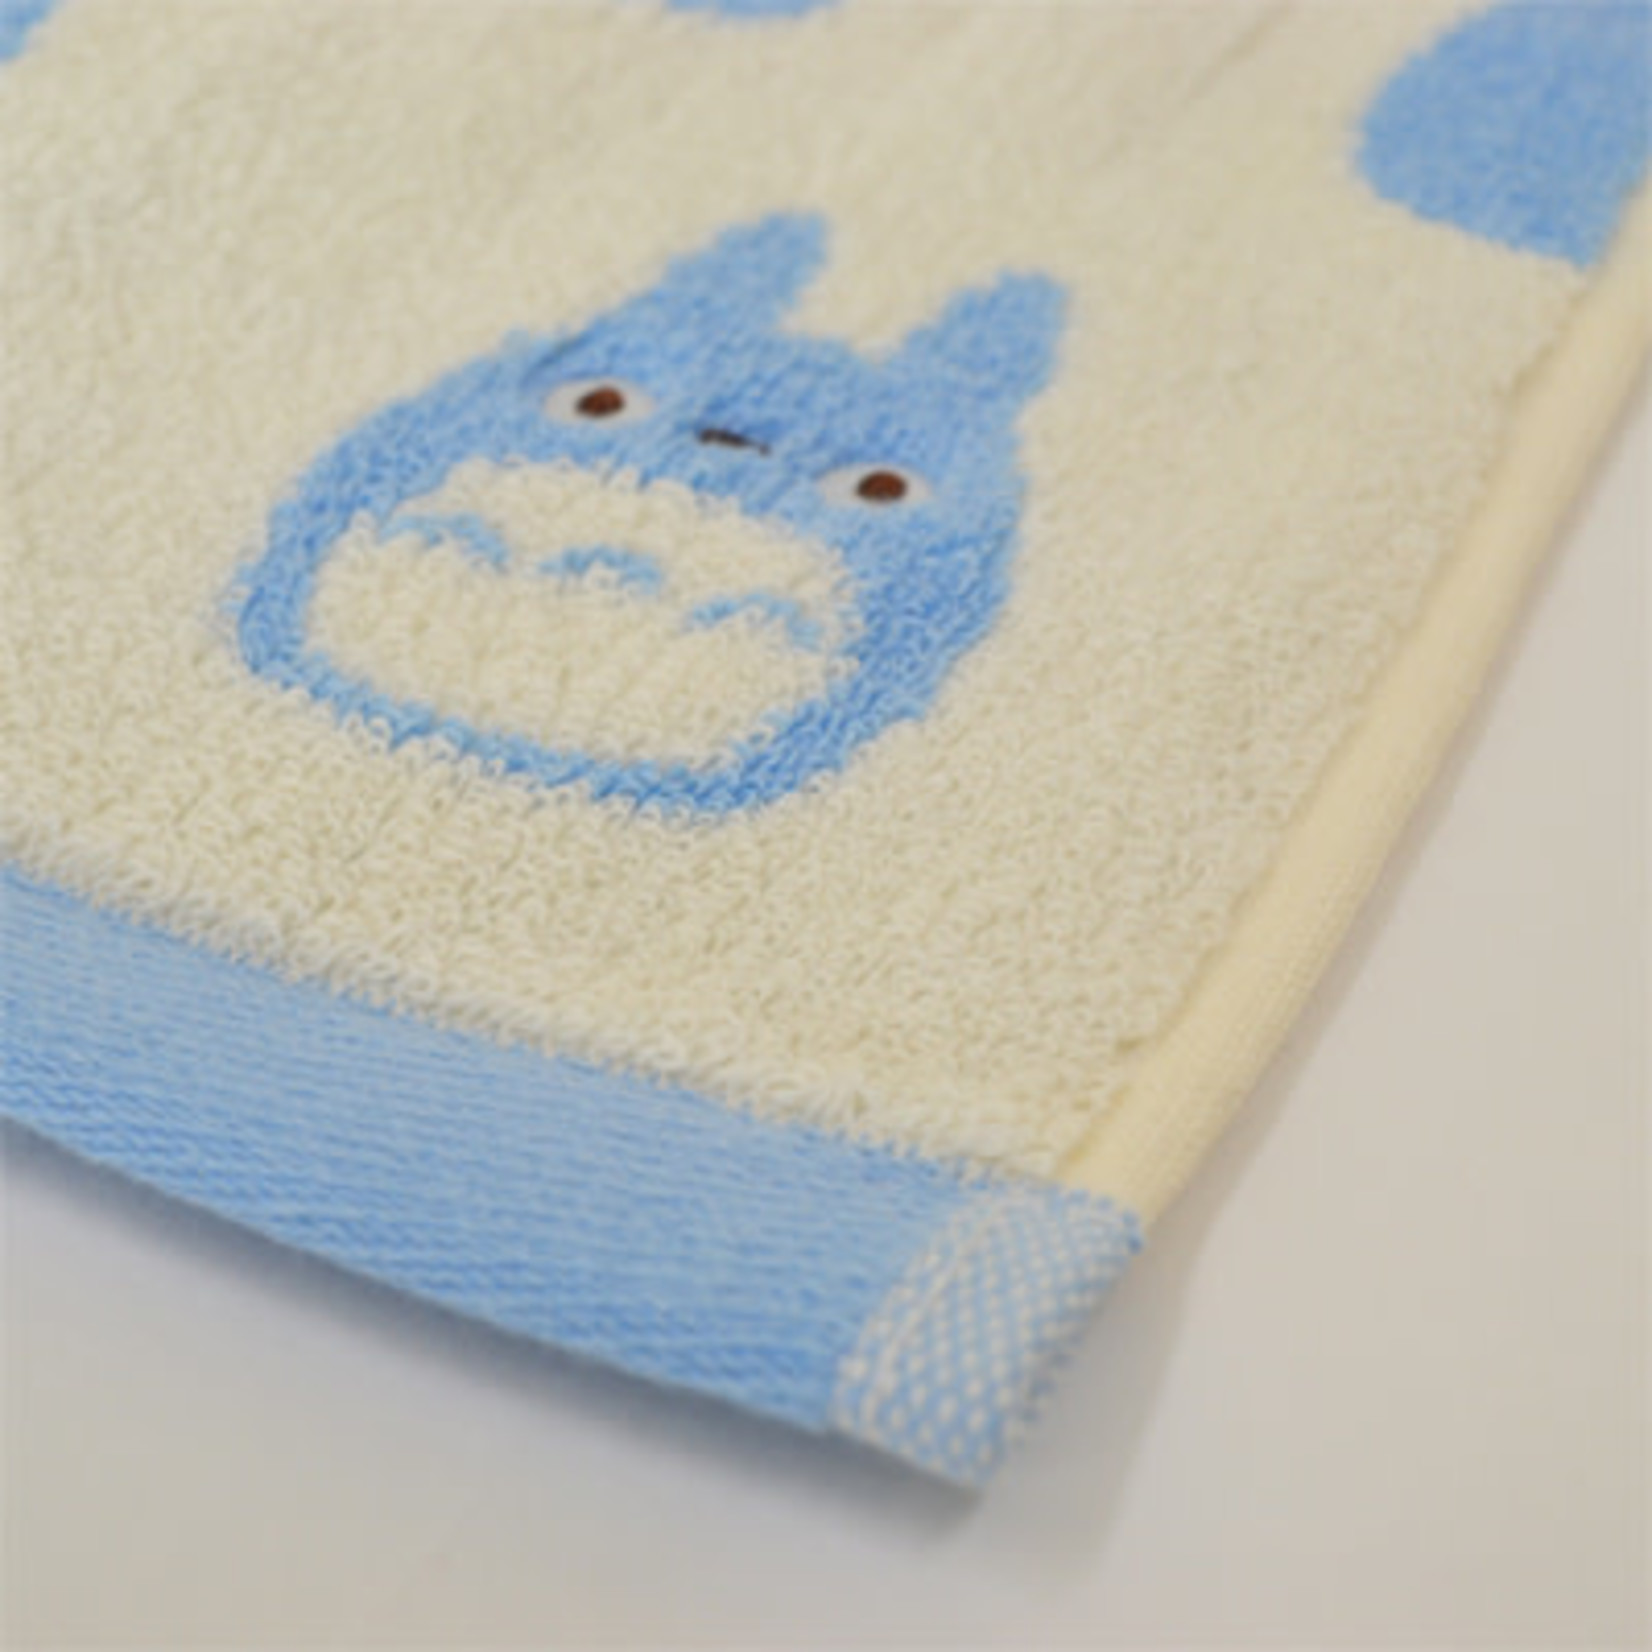 Marushin Totoro Medium Silhouette Hand Towel